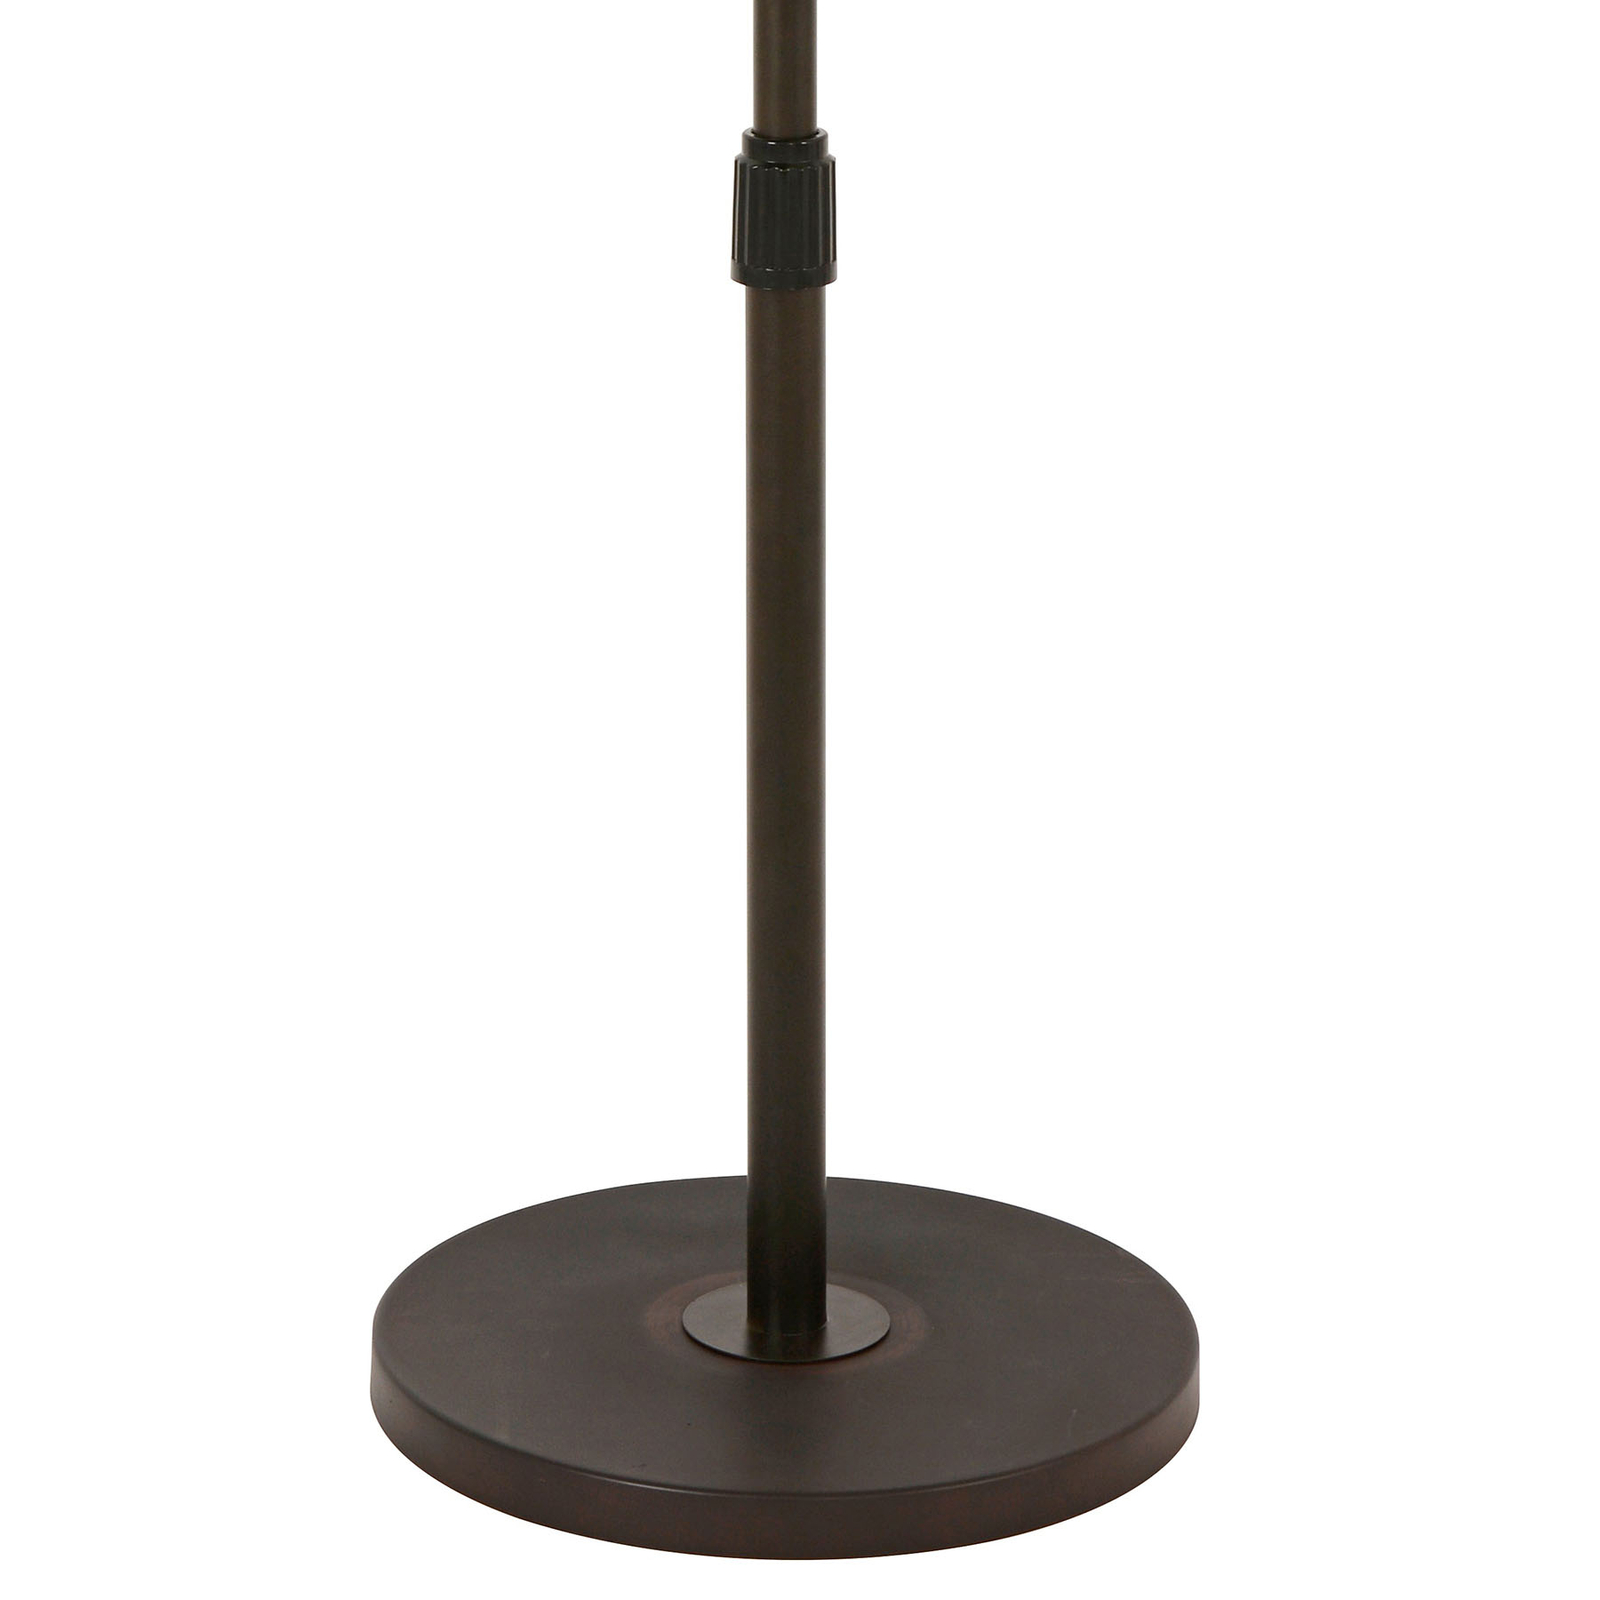 Beacon Ventilateur sur pied Breeze couleur bronze, pied rond, silencieux